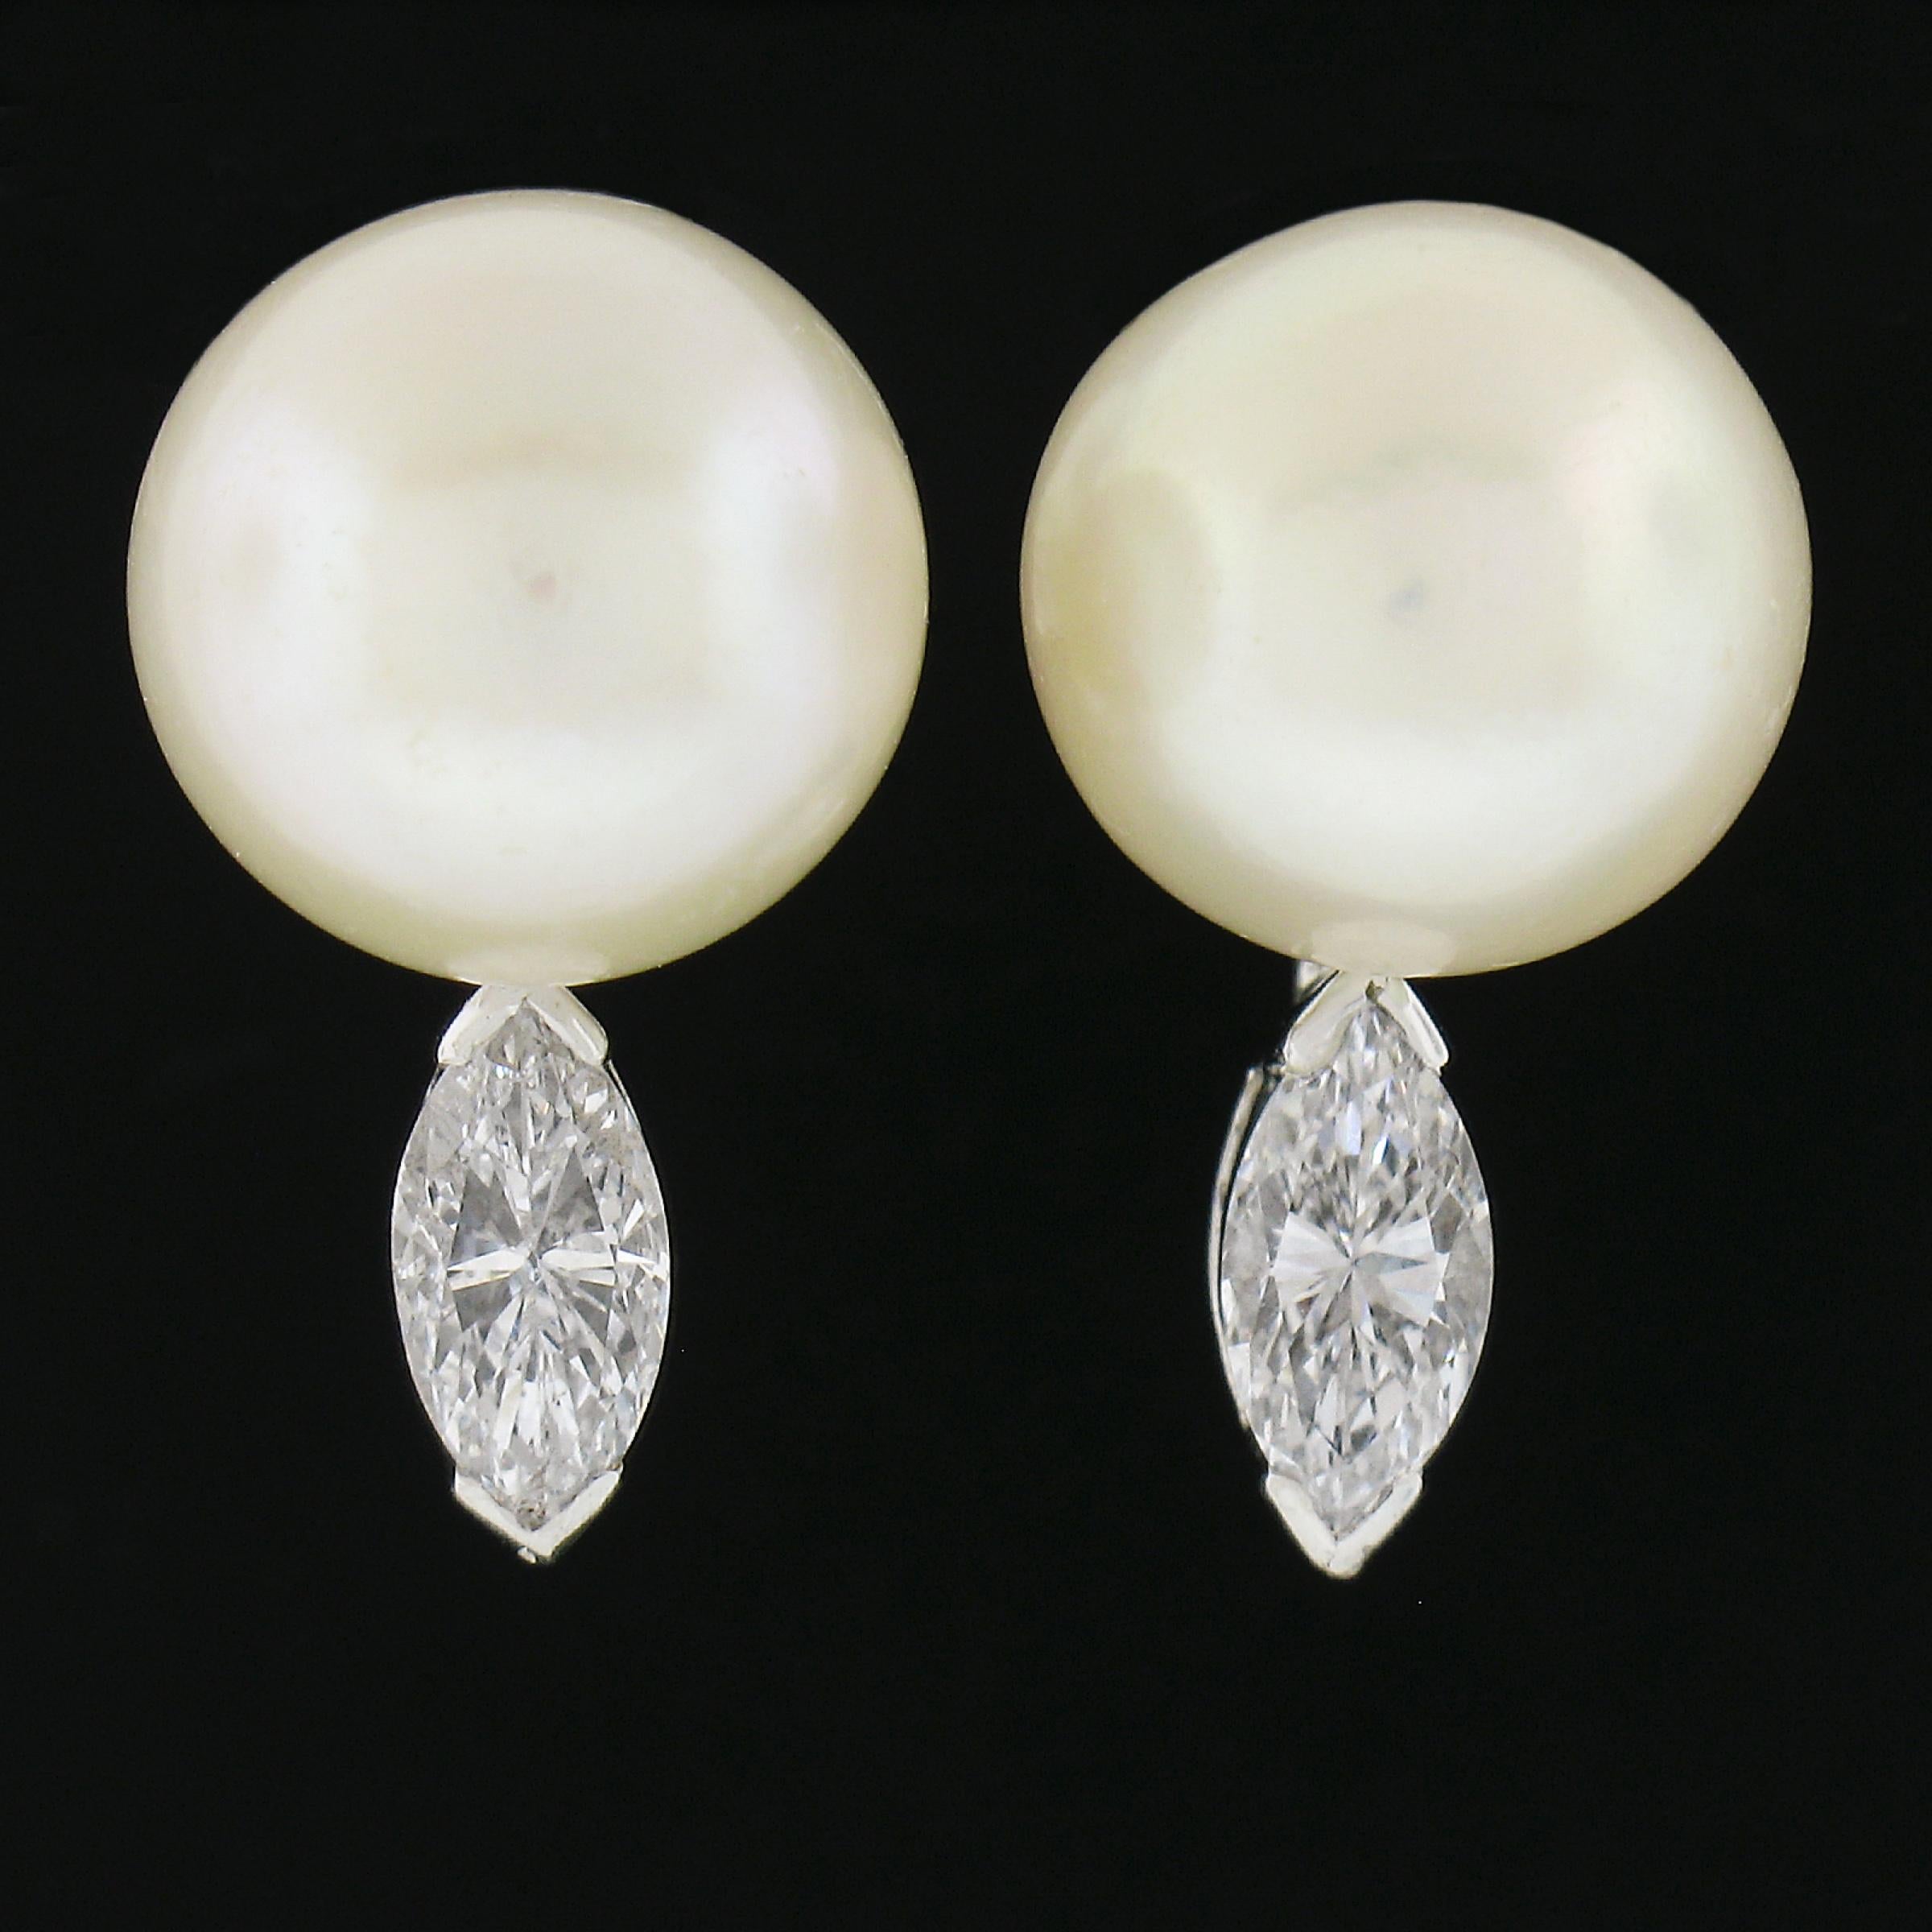 --Pierre(s) :...
(2) Perles de culture véritables - forme ronde - belle couleur blanche - bon lustre - 10mm+ chacune (approx.)
(2) Diamants naturels authentiques - taille Marquise - serti en V - couleur G/H - pureté VS2-SI2 - 0.65ctw (approx.)
Poids